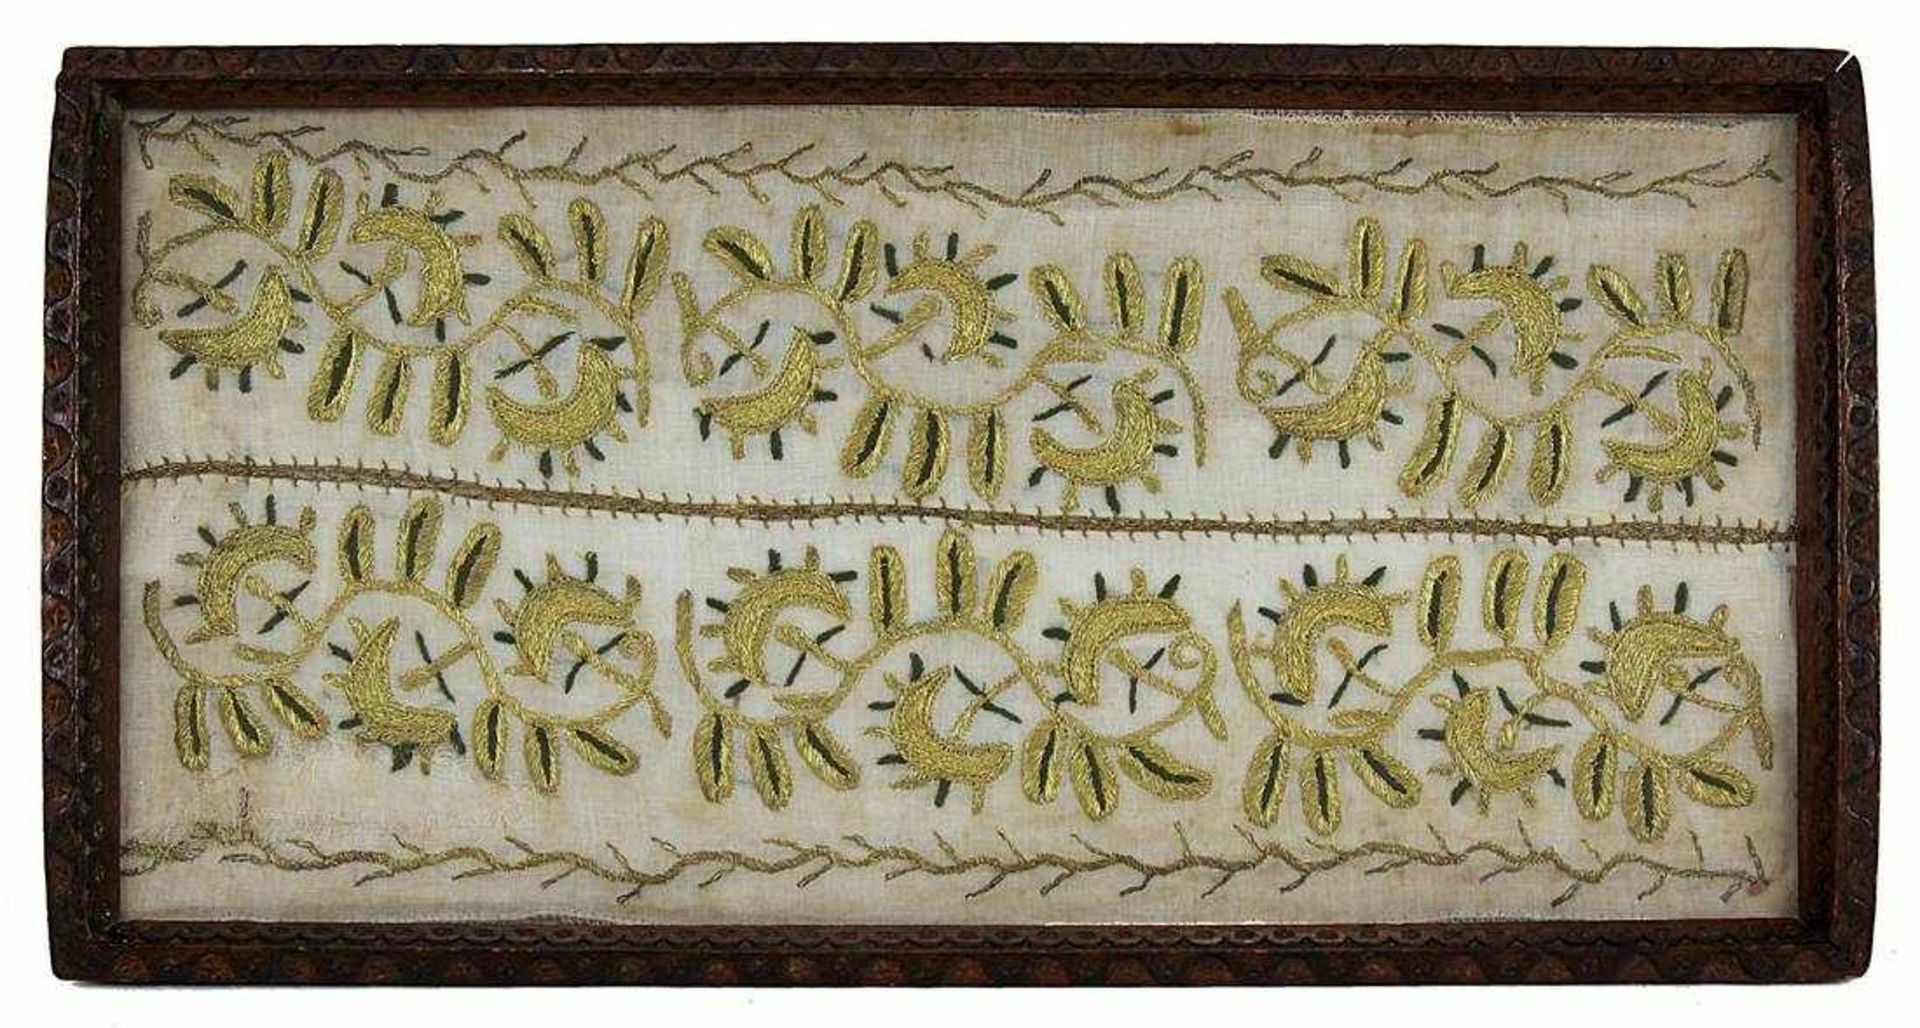 Stickerei, Anfang 19. Jh., Goldfäden auf Seide, als gold-grüne Blattranken, 36,5 x 18,5 cm, unt.